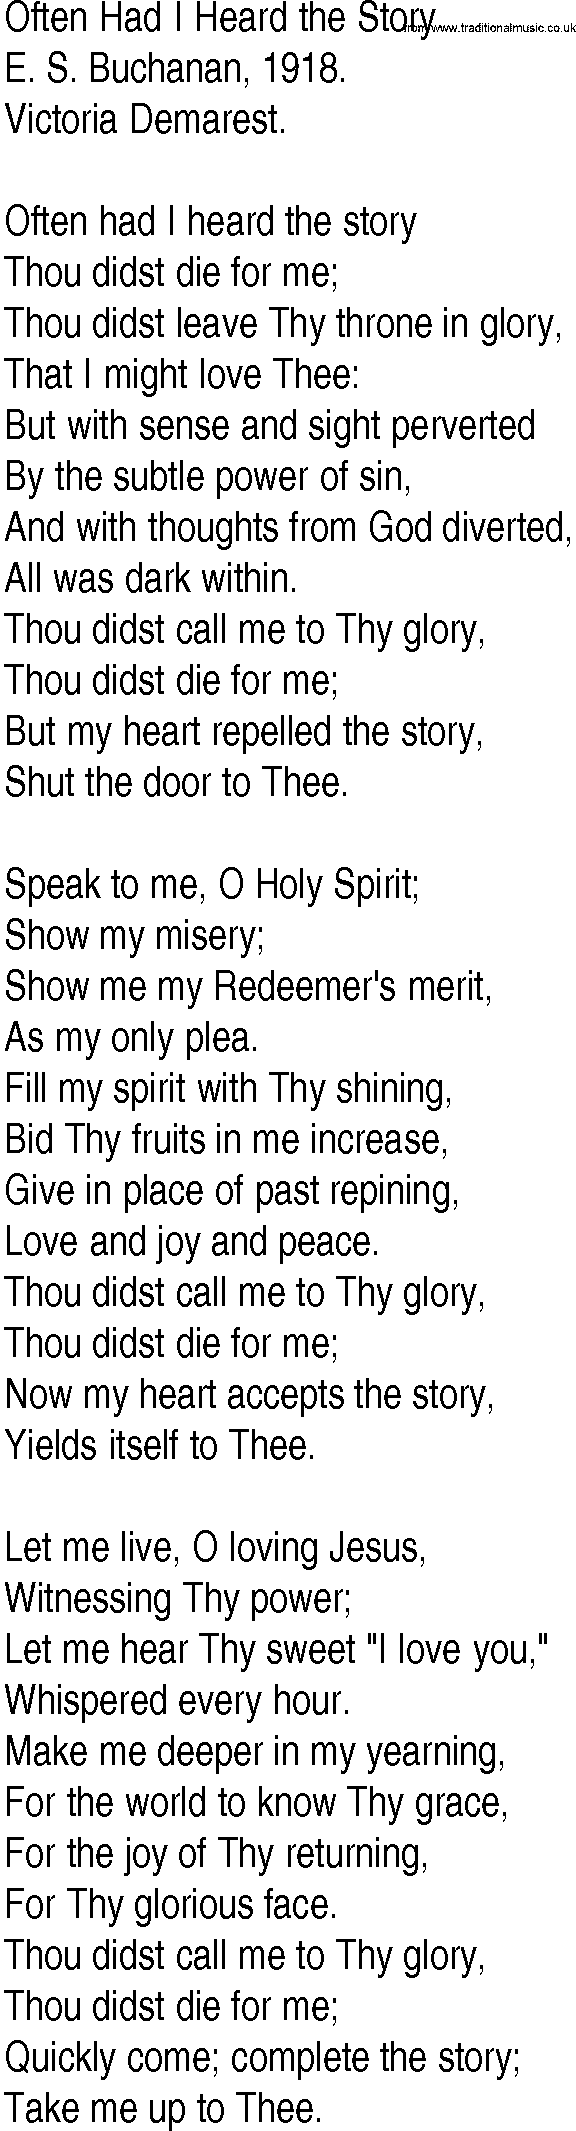 Hymn and Gospel Song: Often Had I Heard the Story by E S Buchanan lyrics